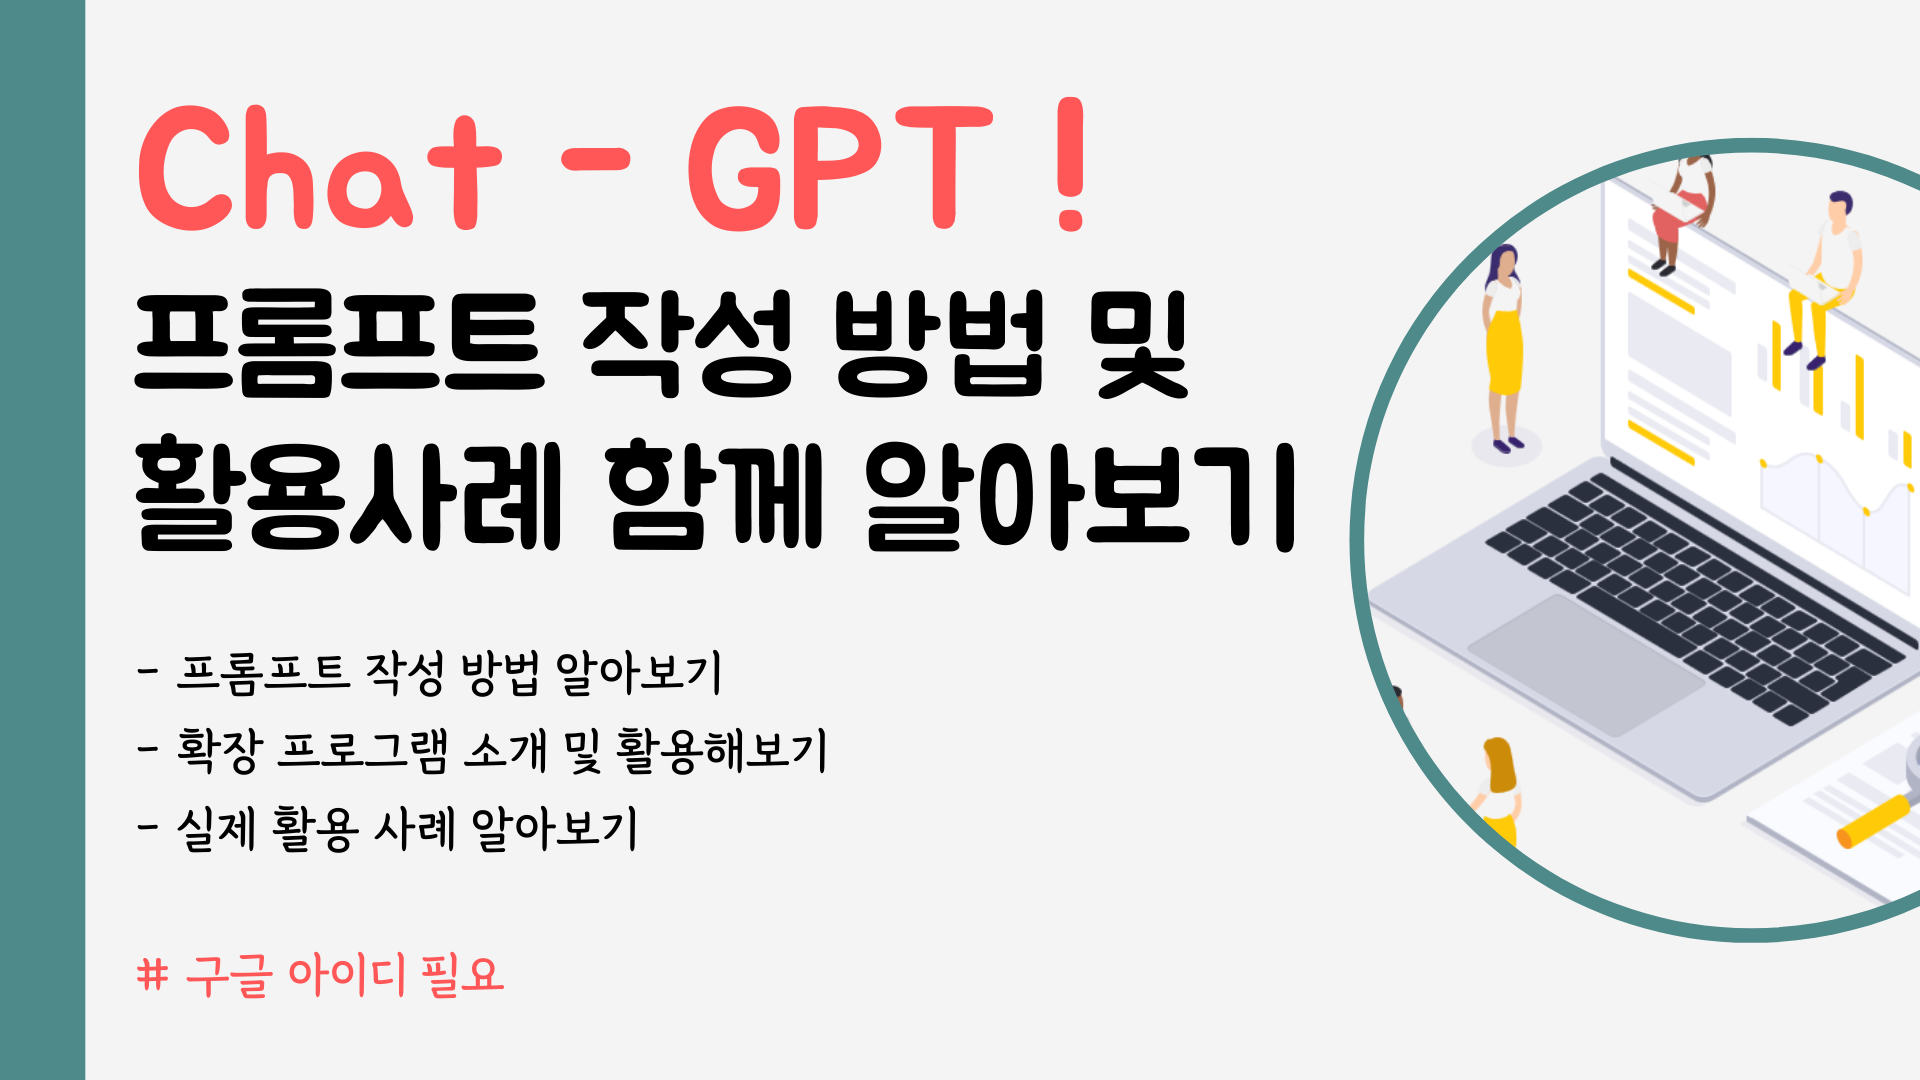 Chat-GPT! 프롬프트 작성 방법 및 활용 사례 함께 알아보기